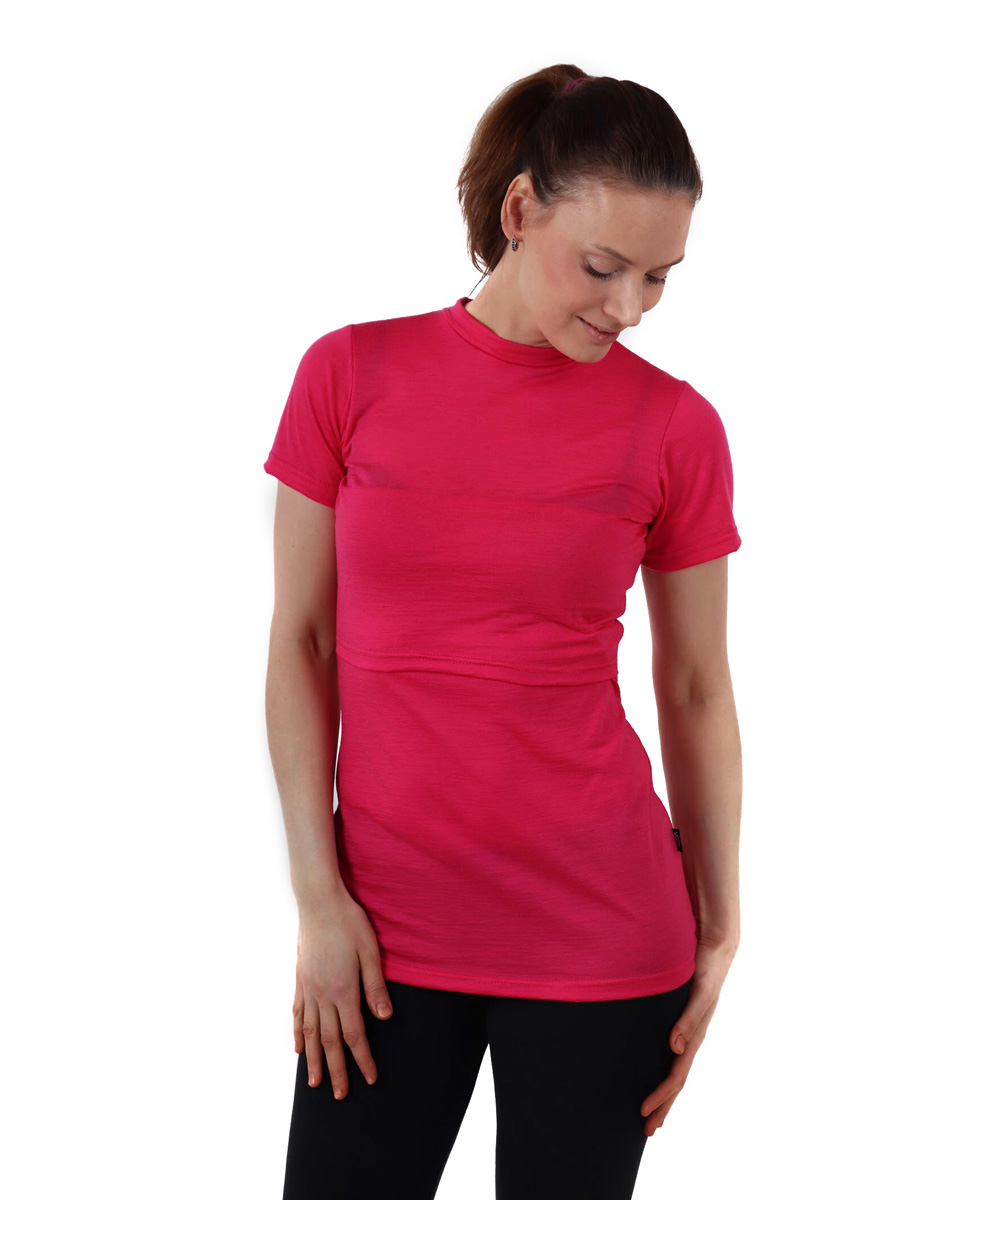 Nursing t-shirt merino wool Meda, pink